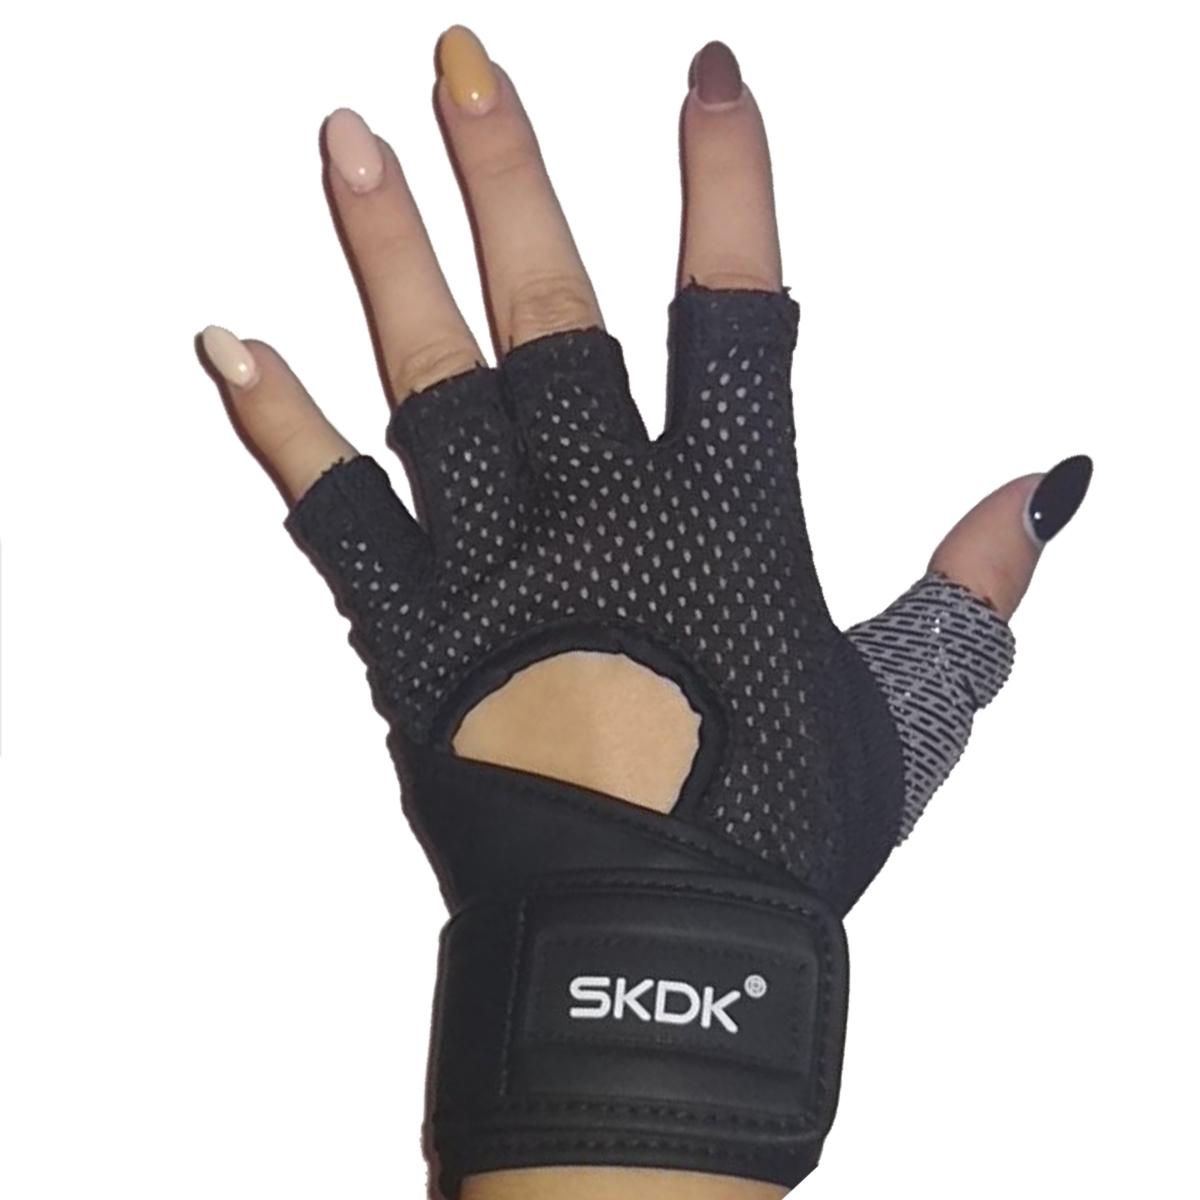 Изображение товара: SKDK дышащая Фитнес тренажерный зал перчатки с наручные Поддержка тренировки Вес лифтинга Crossfit тренировочный Велоспорт перчатки на нескользящей подошве; 1 пара